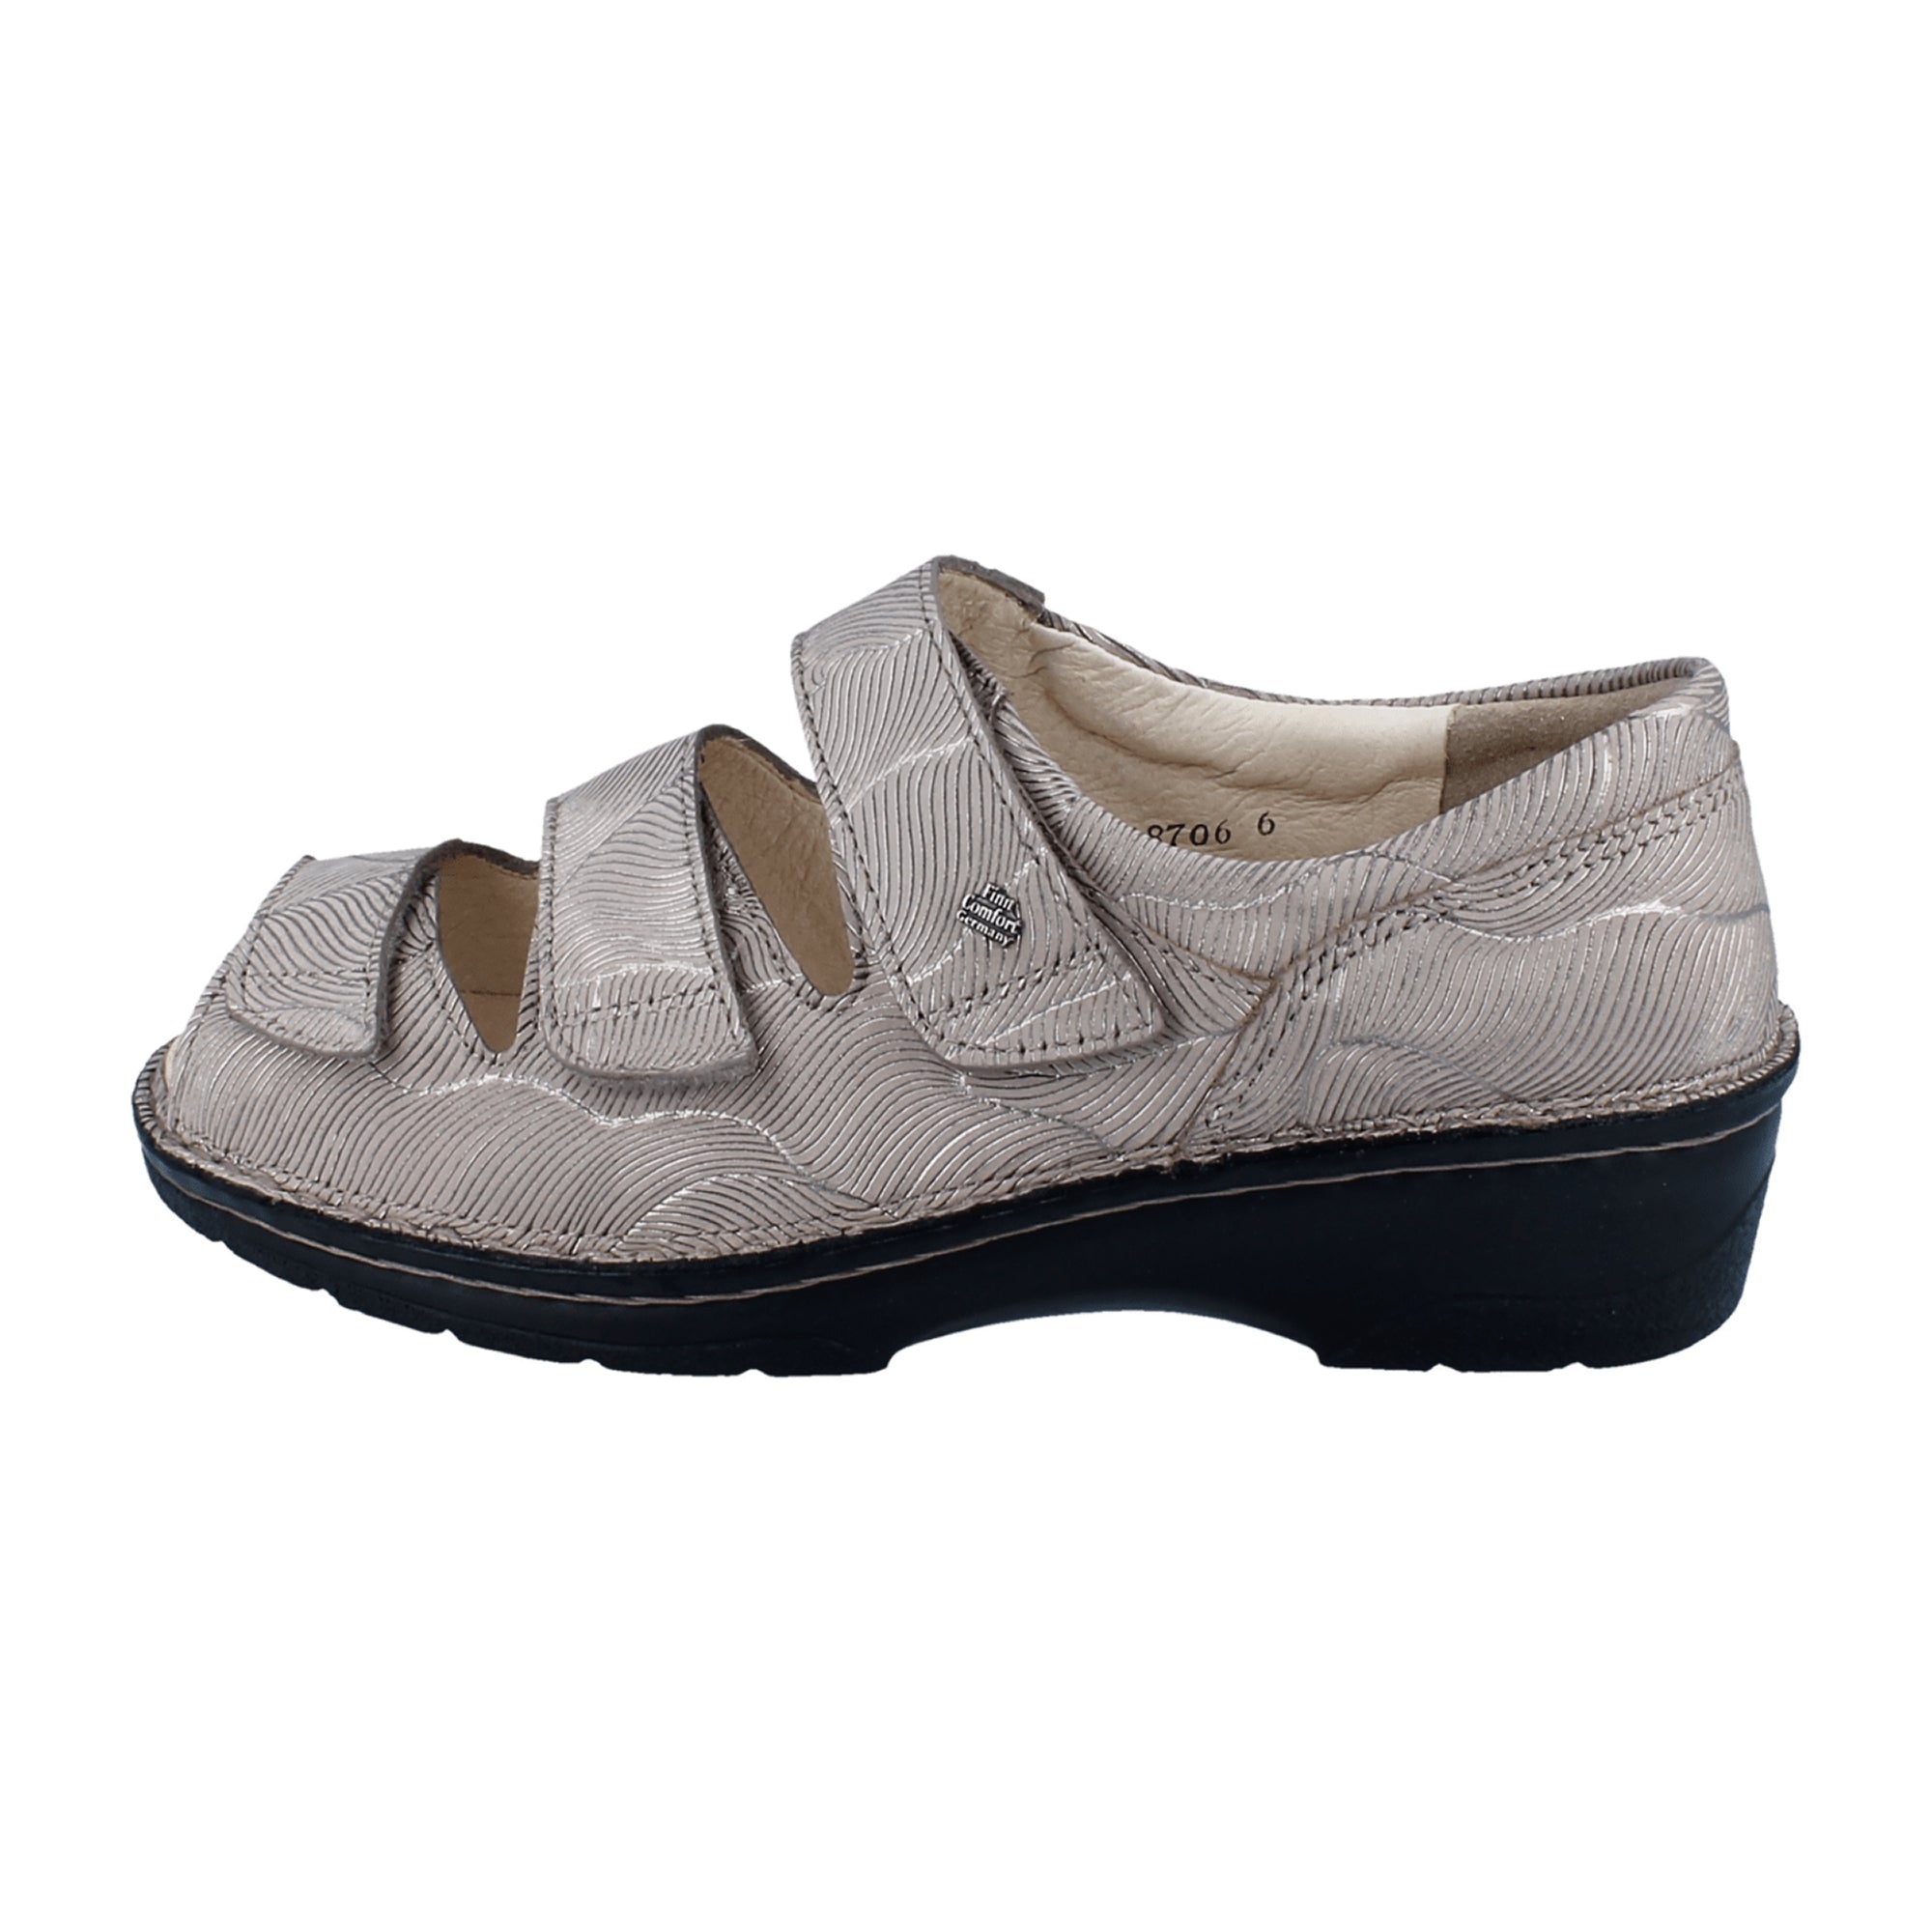 Finn Comfort Ischia Women's Comfort Sandals - Stylish Grey